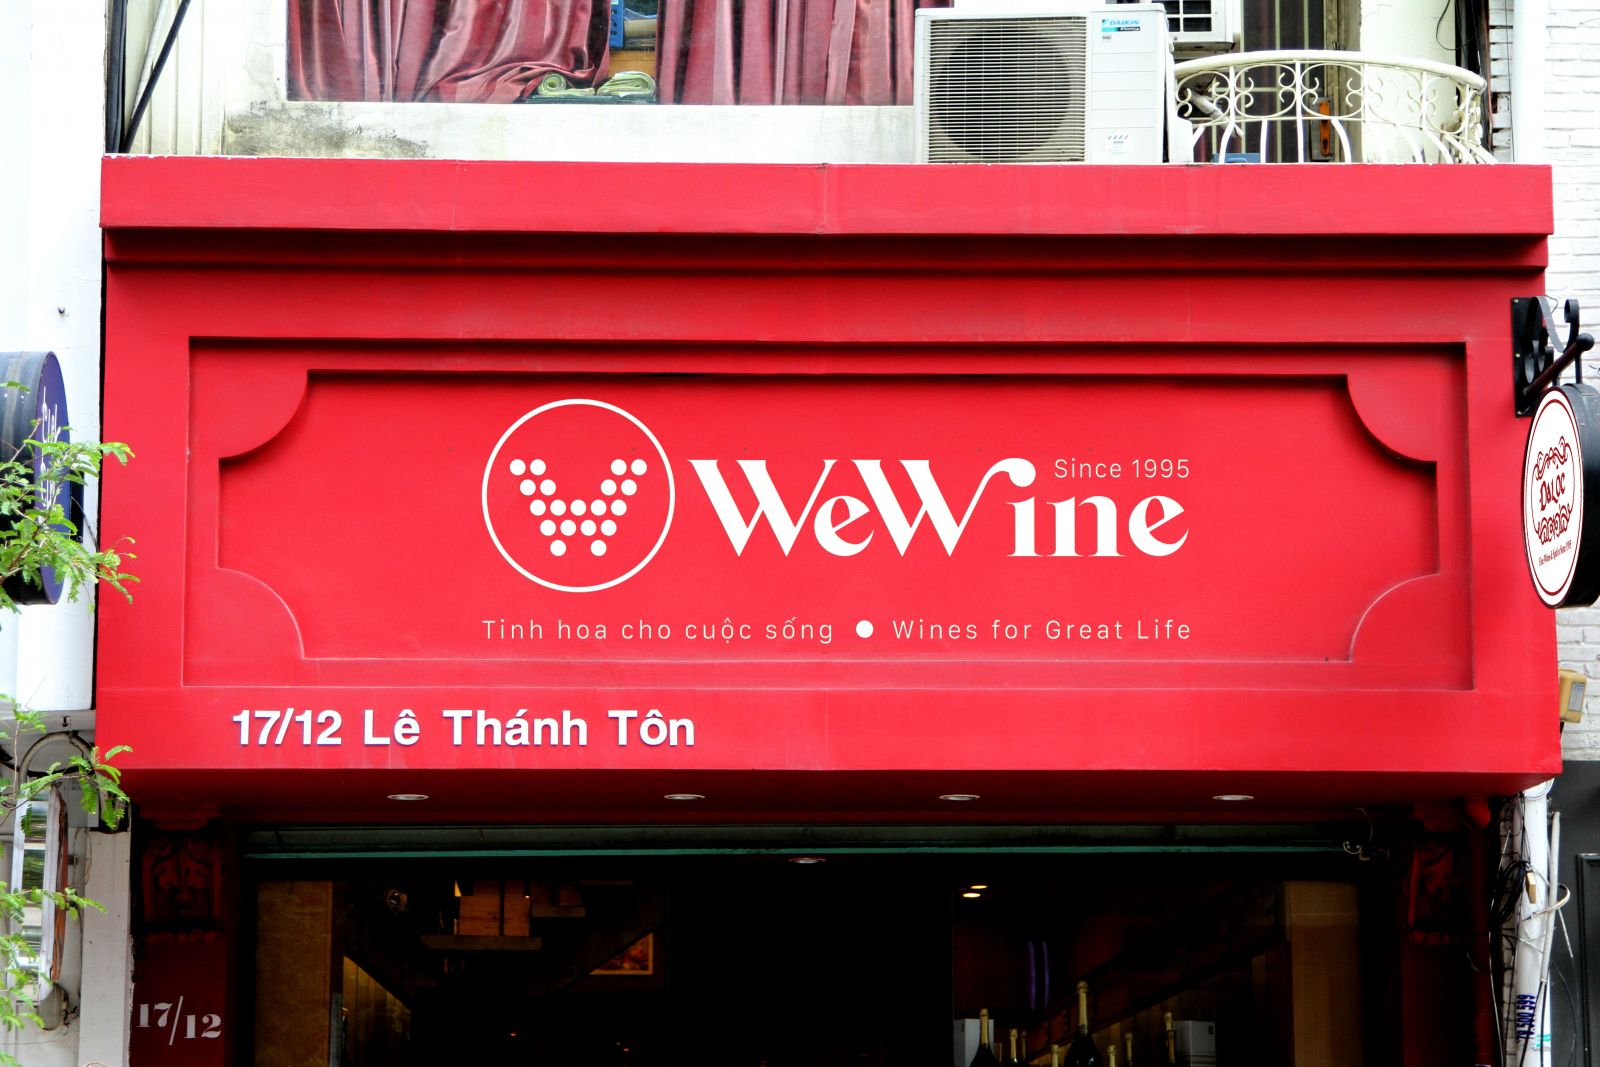 Logo nhận diện thương hiệu WeWine - Hệ thống bán lẻ đồ uống cao cấp uy tín trên cả nước